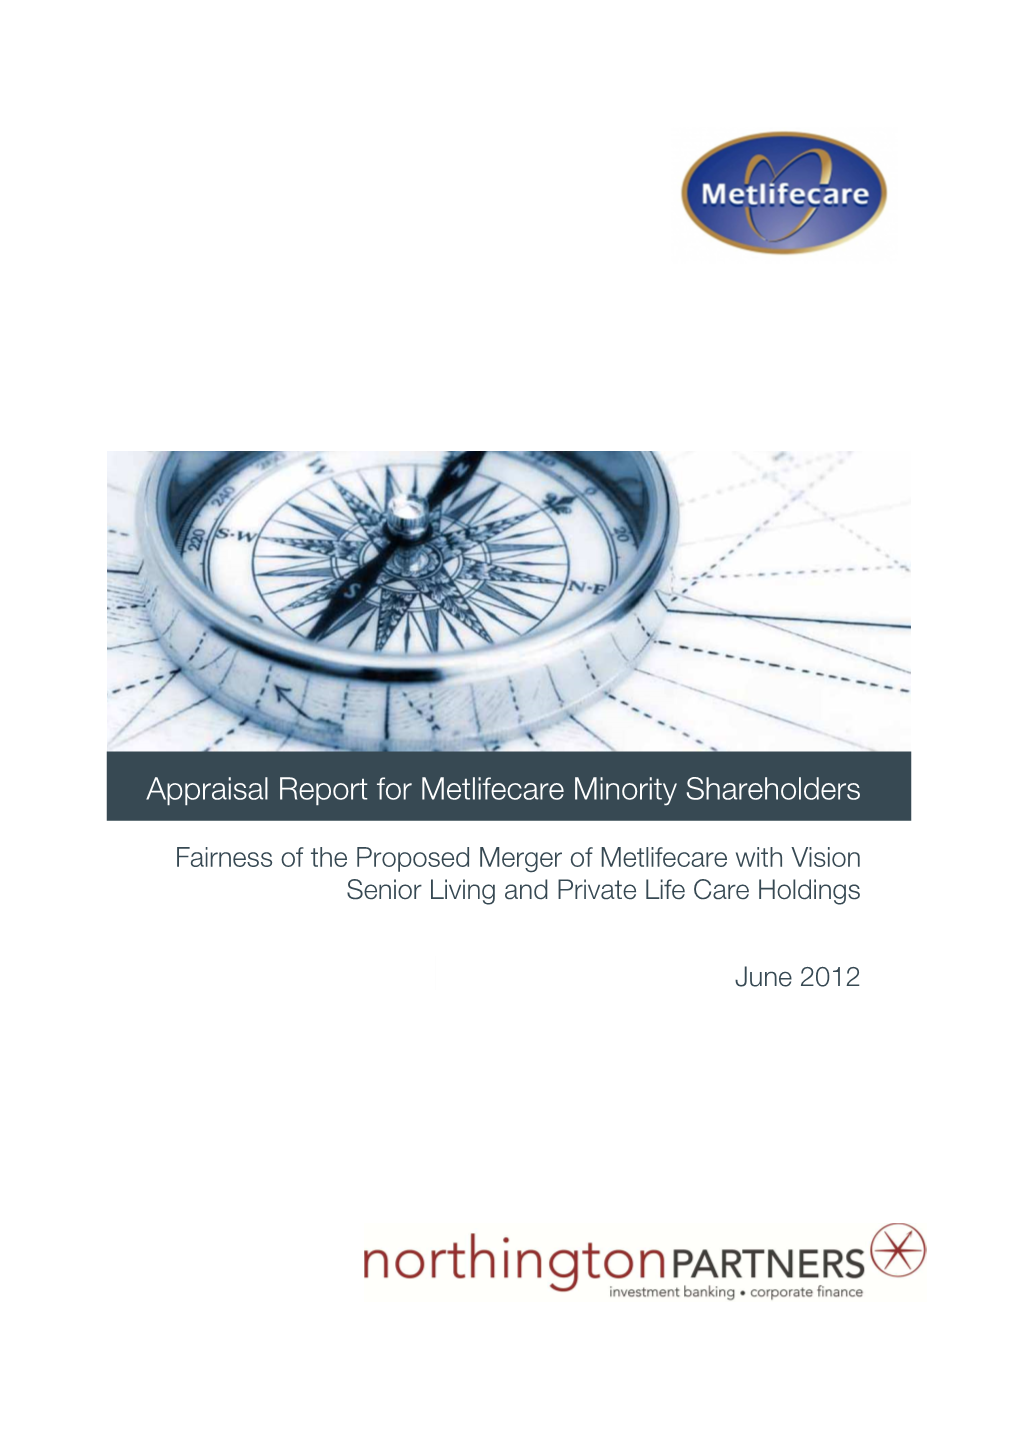 Metlifecare Appraisal Report FINAL (3 June 2012)